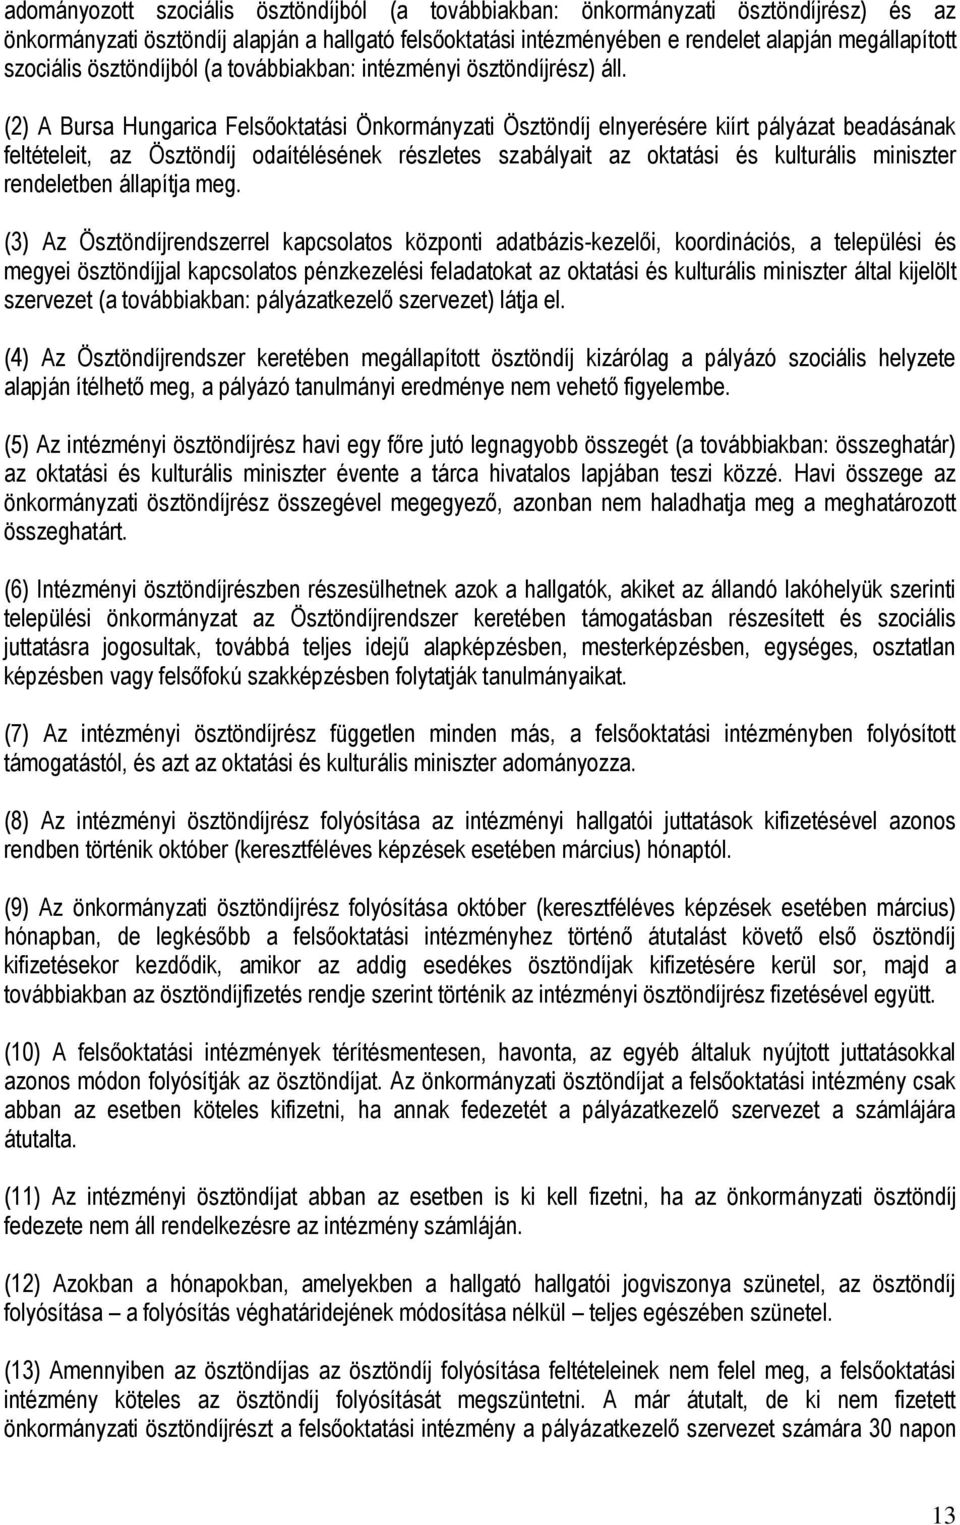 (2) A Bursa Hungarica Felsőoktatási Önkormányzati Ösztöndíj elnyerésére kiírt pályázat beadásának feltételeit, az Ösztöndíj odaítélésének részletes szabályait az oktatási és kulturális miniszter